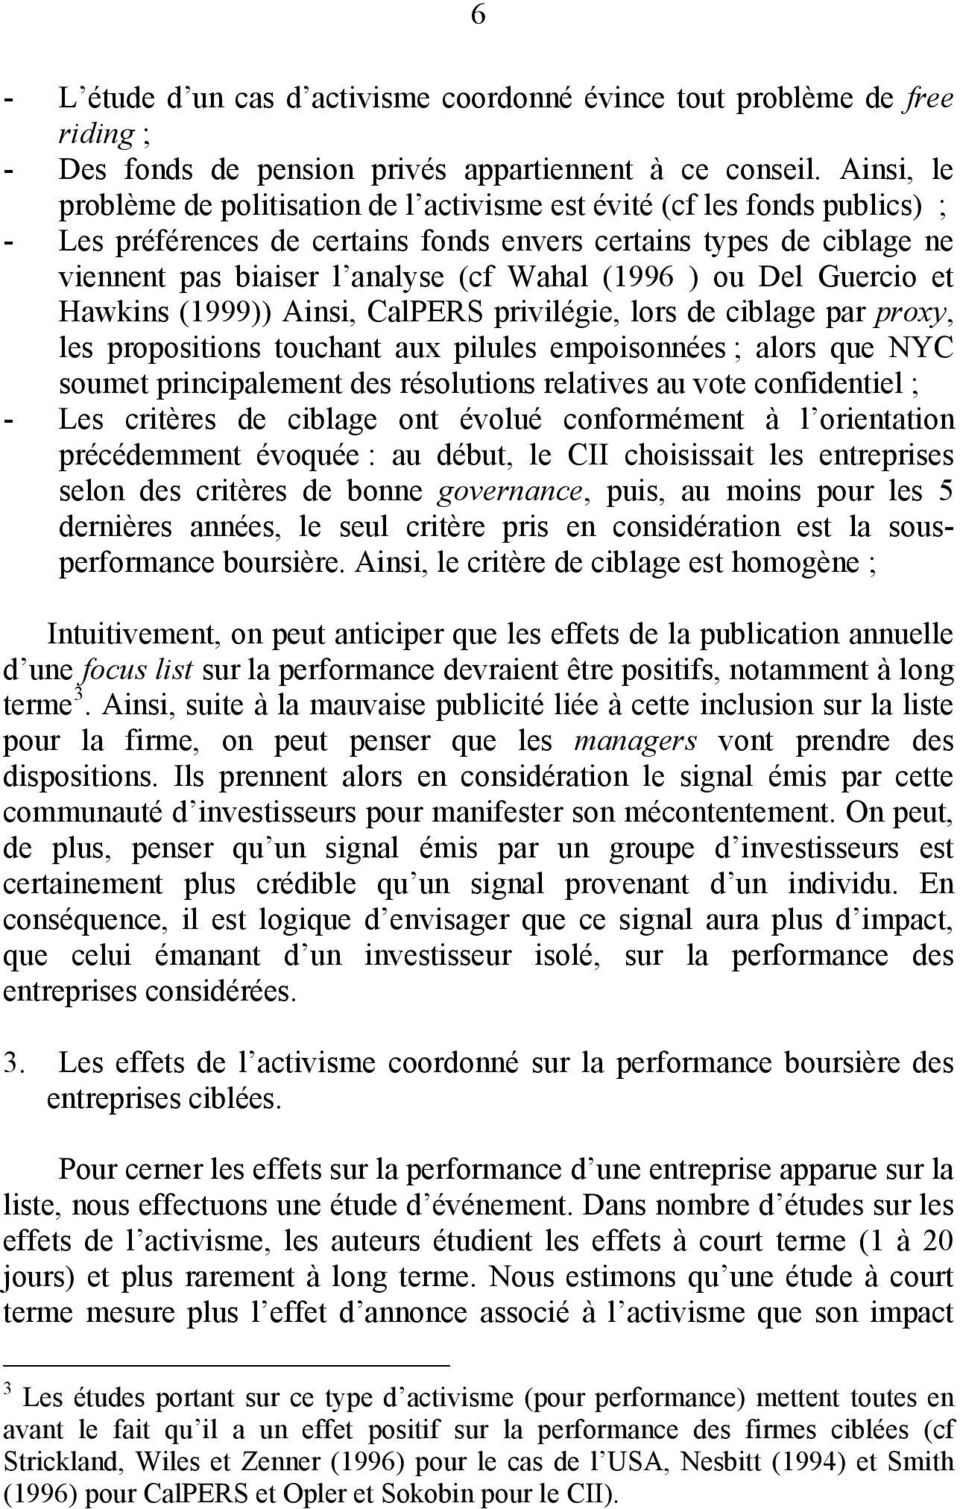 Del Guercio e Hawkins (1999)) Ainsi, CalPERS privilégie, lors de ciblage par proxy, les proposiions ouchan aux pilules empoisonnées ; alors que NYC soume principalemen des résoluions relaives au voe